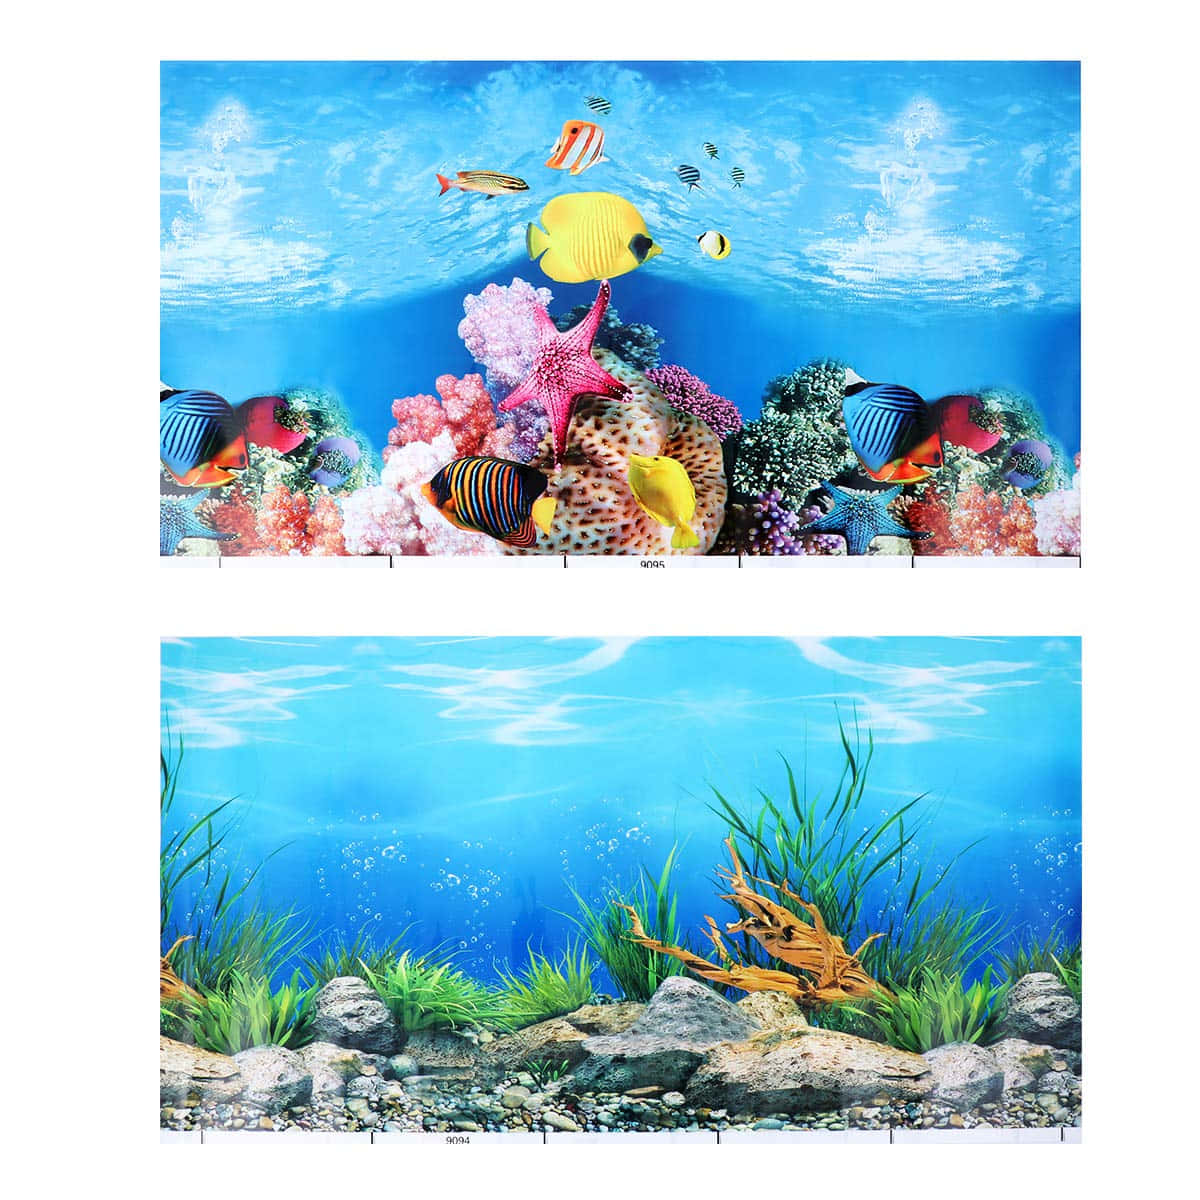 Escapism at its Finest - Take a Dive into the Tropical Aquarium Fish Tank Wallpaper